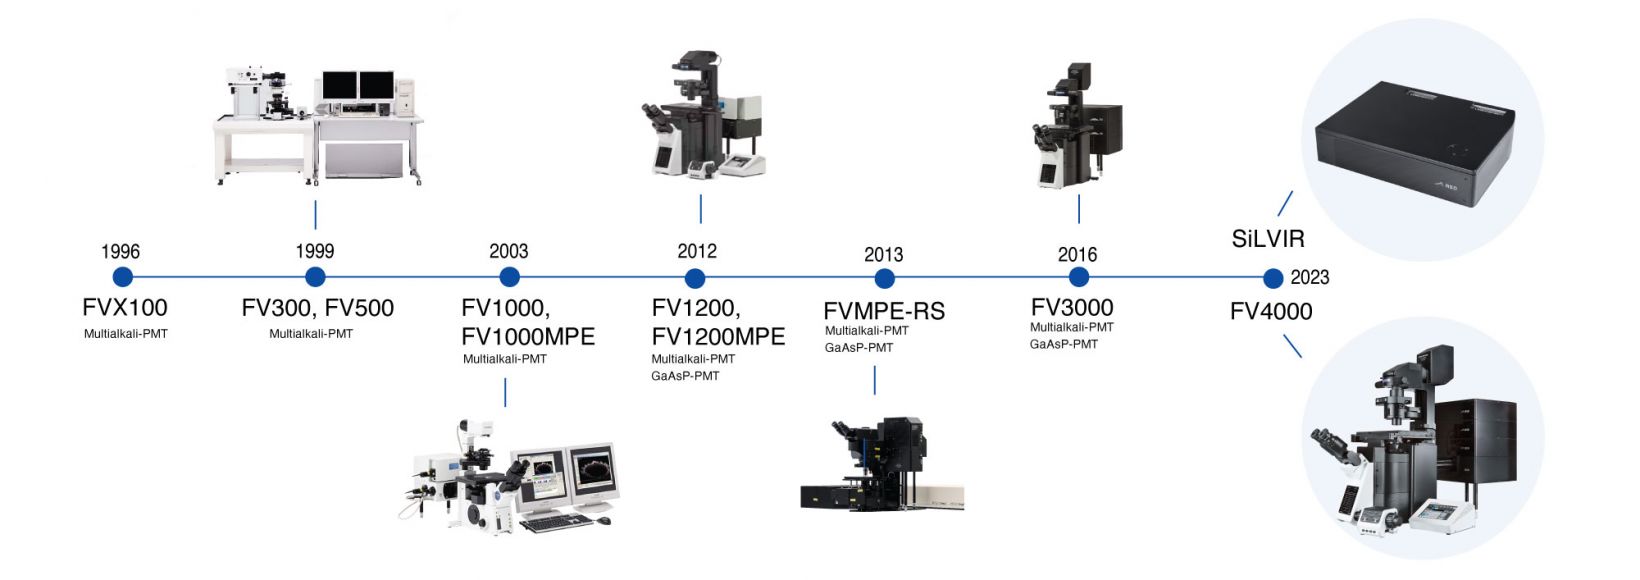 Zeitlicher Überblick über die Entwicklung der konfokalen Mikroskopie, zunächst bei Olympus und dann bei Evident, bis zum FV4000 Laser-Konfokalmikroskop.